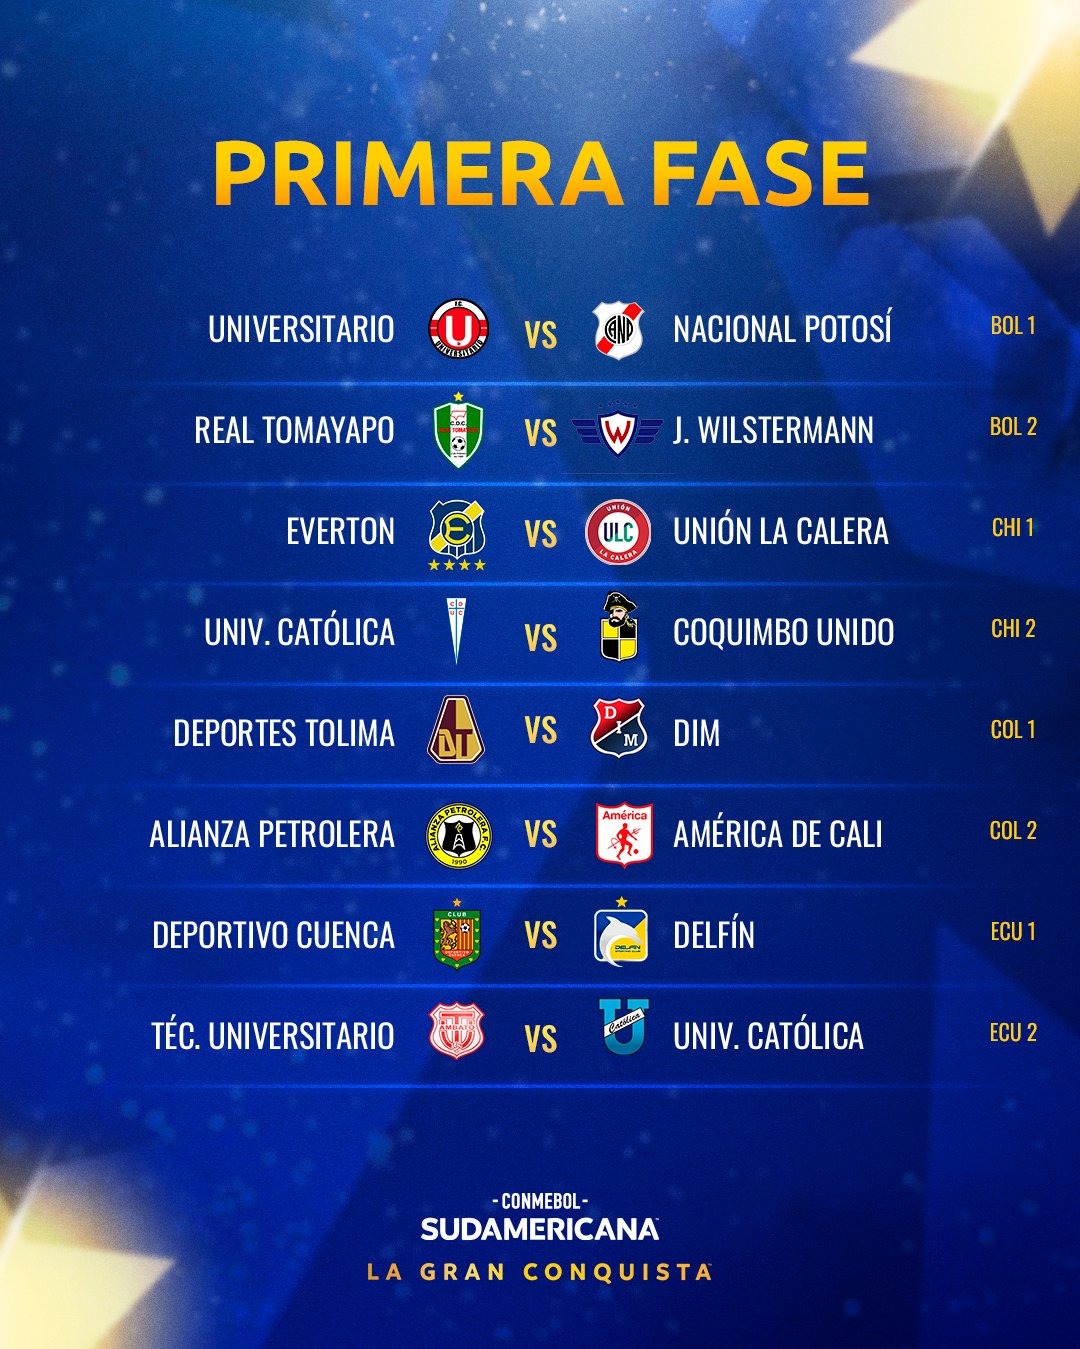 Así se jugarán los partidos de la primera fase de la Sudamericana. | Fuente: CONMEBOL